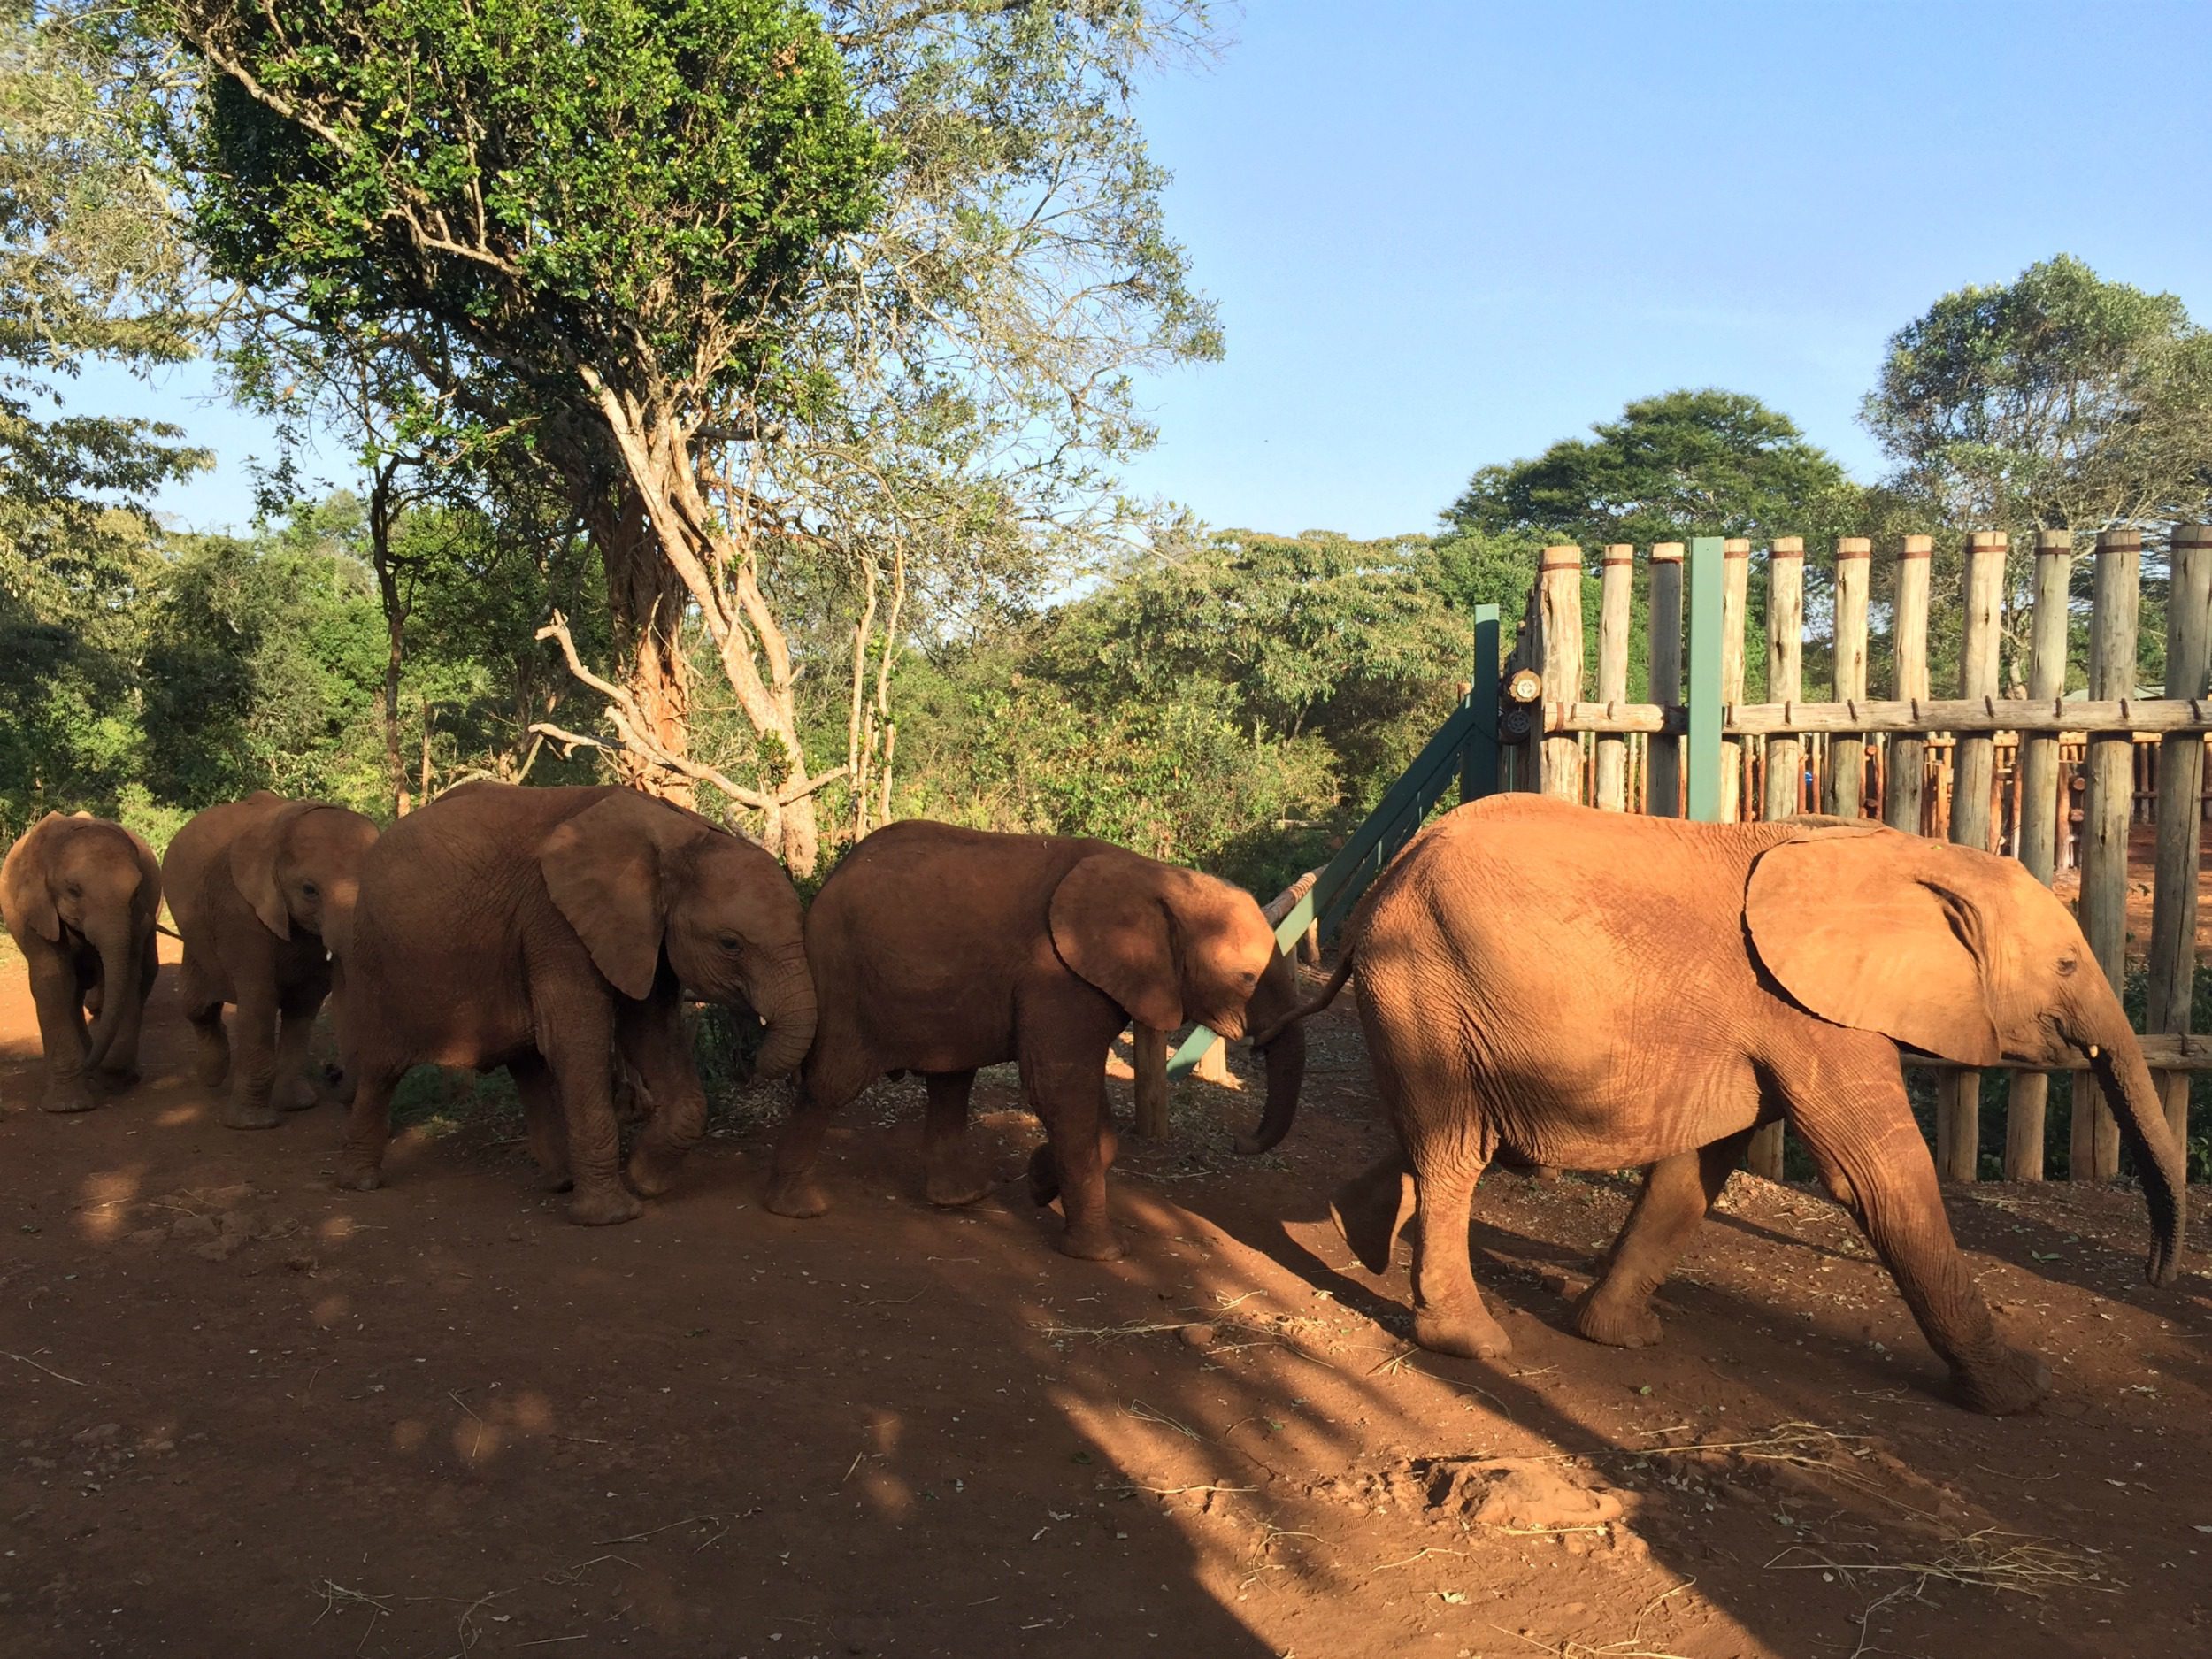 David Sheldrick Elephant Orphanage - Photo Credit: Forrest Whitcomb